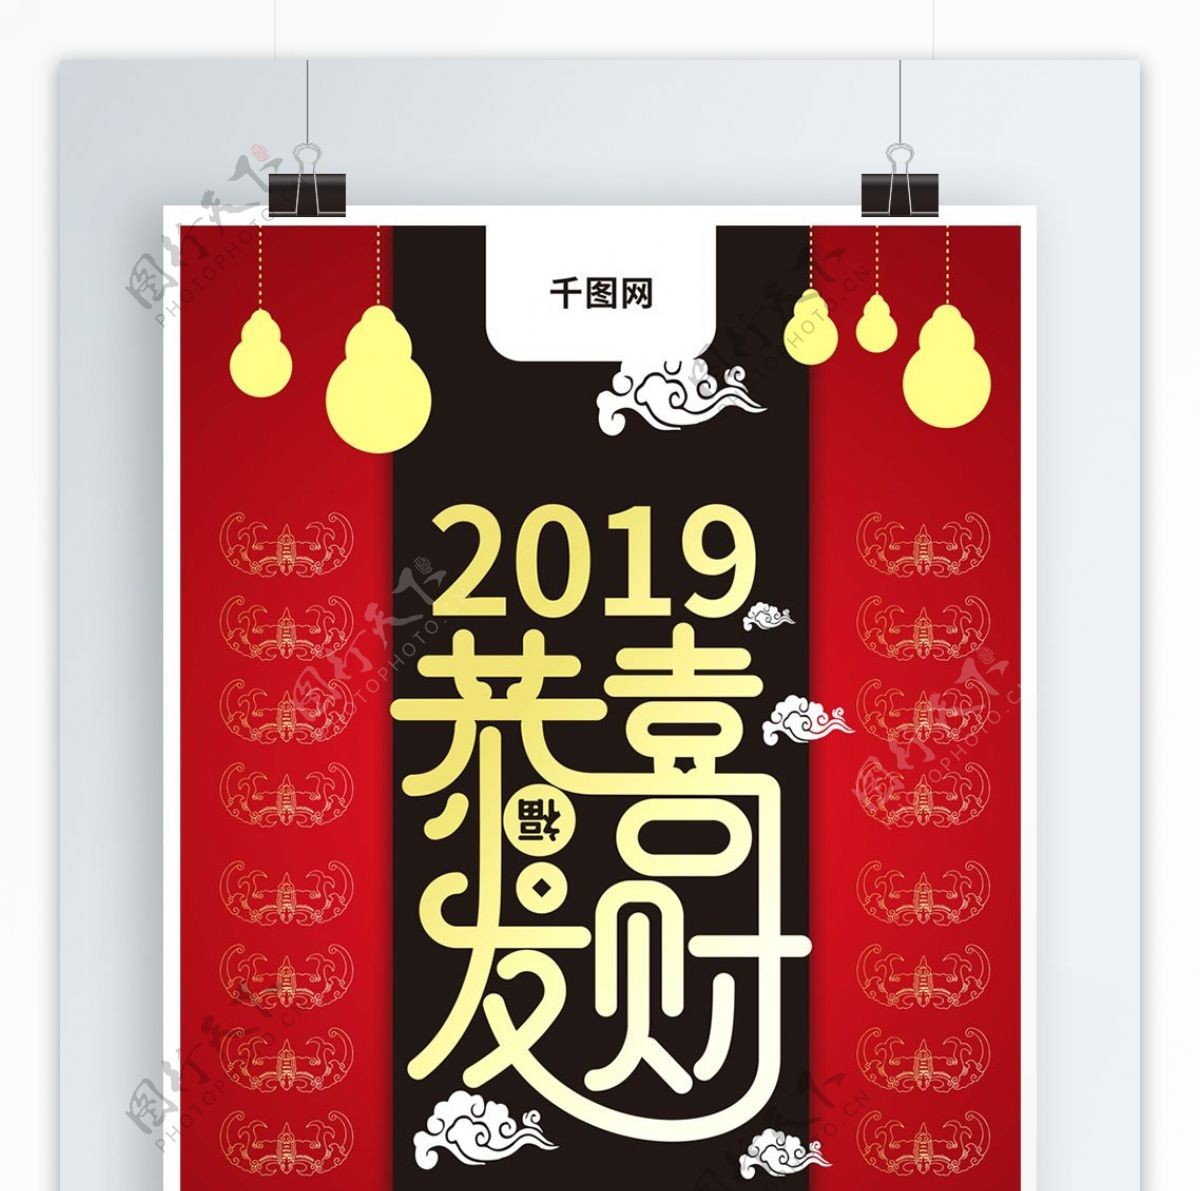 红黑中国风恭喜发财过年祝福宣传海报CDR